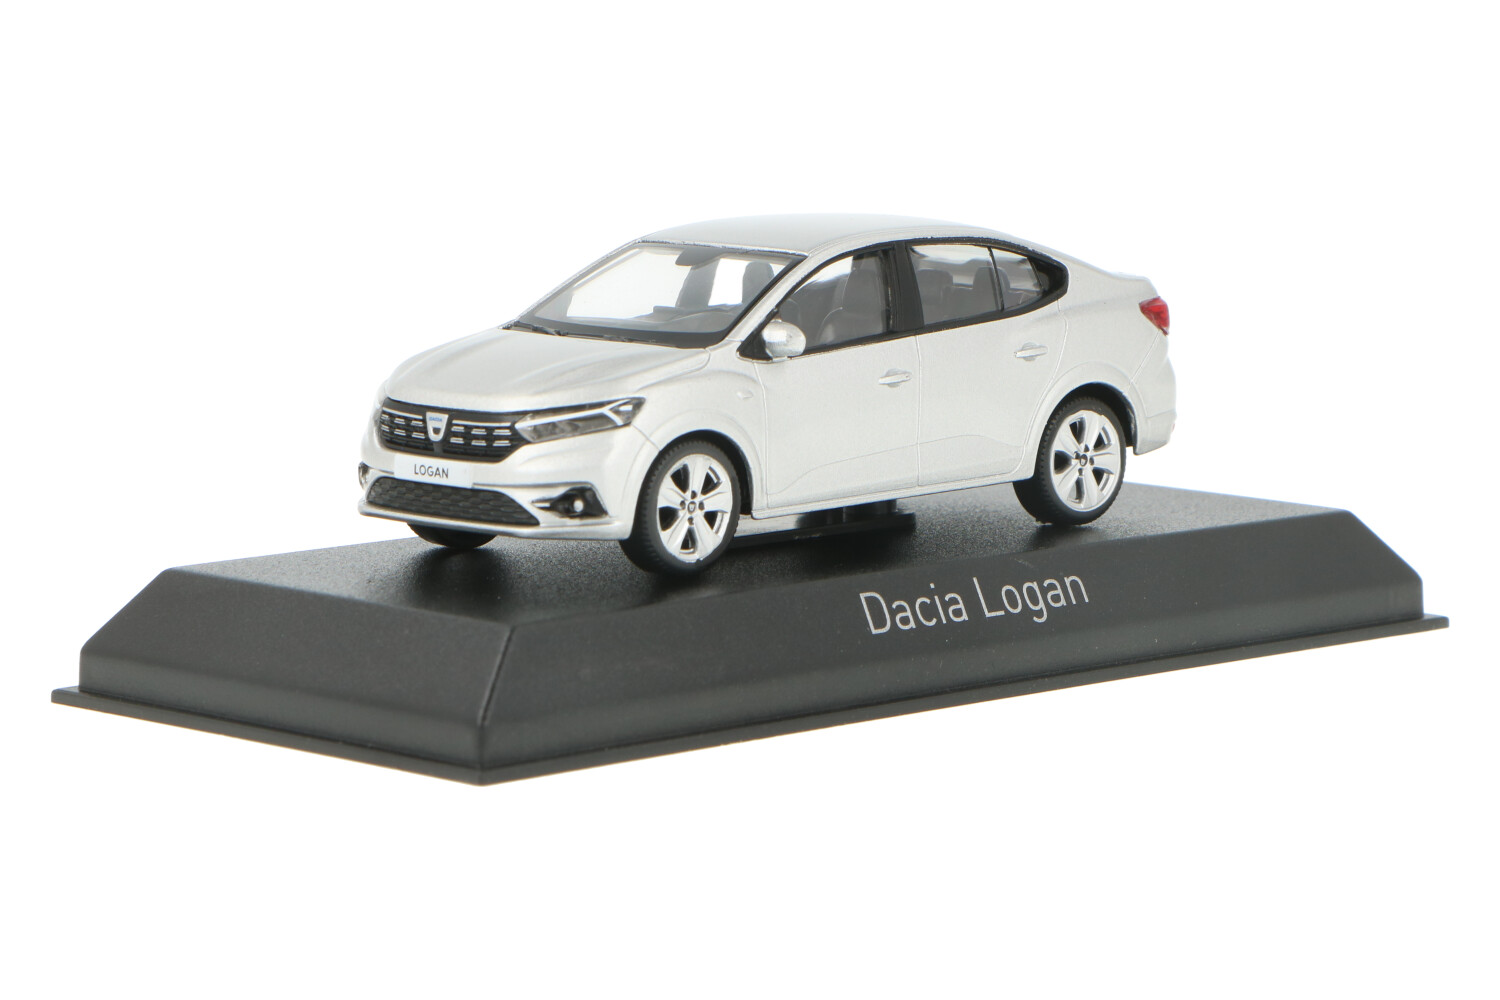 Dacia Logan - Modelauto schaal 1:43